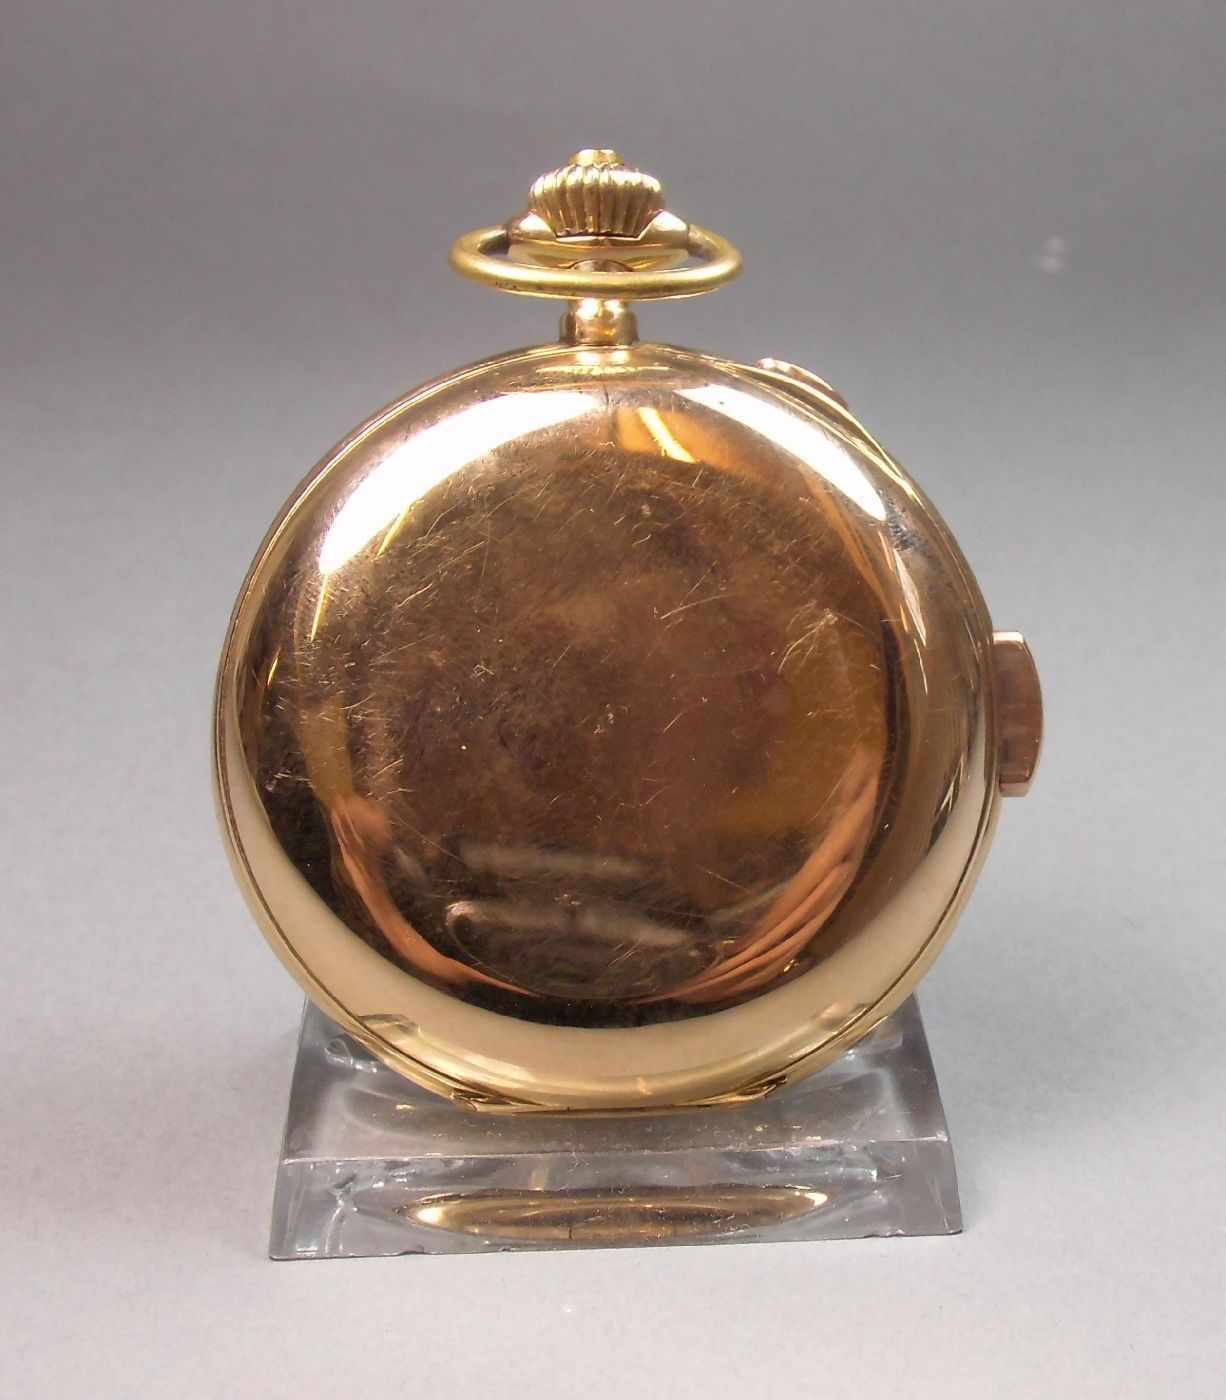 GROSSE GOLD - SAVONETTE, Minutenrepetition mit Chronograf, Taschenuhr / pocket watch, Schweiz, 1888, - Image 6 of 7